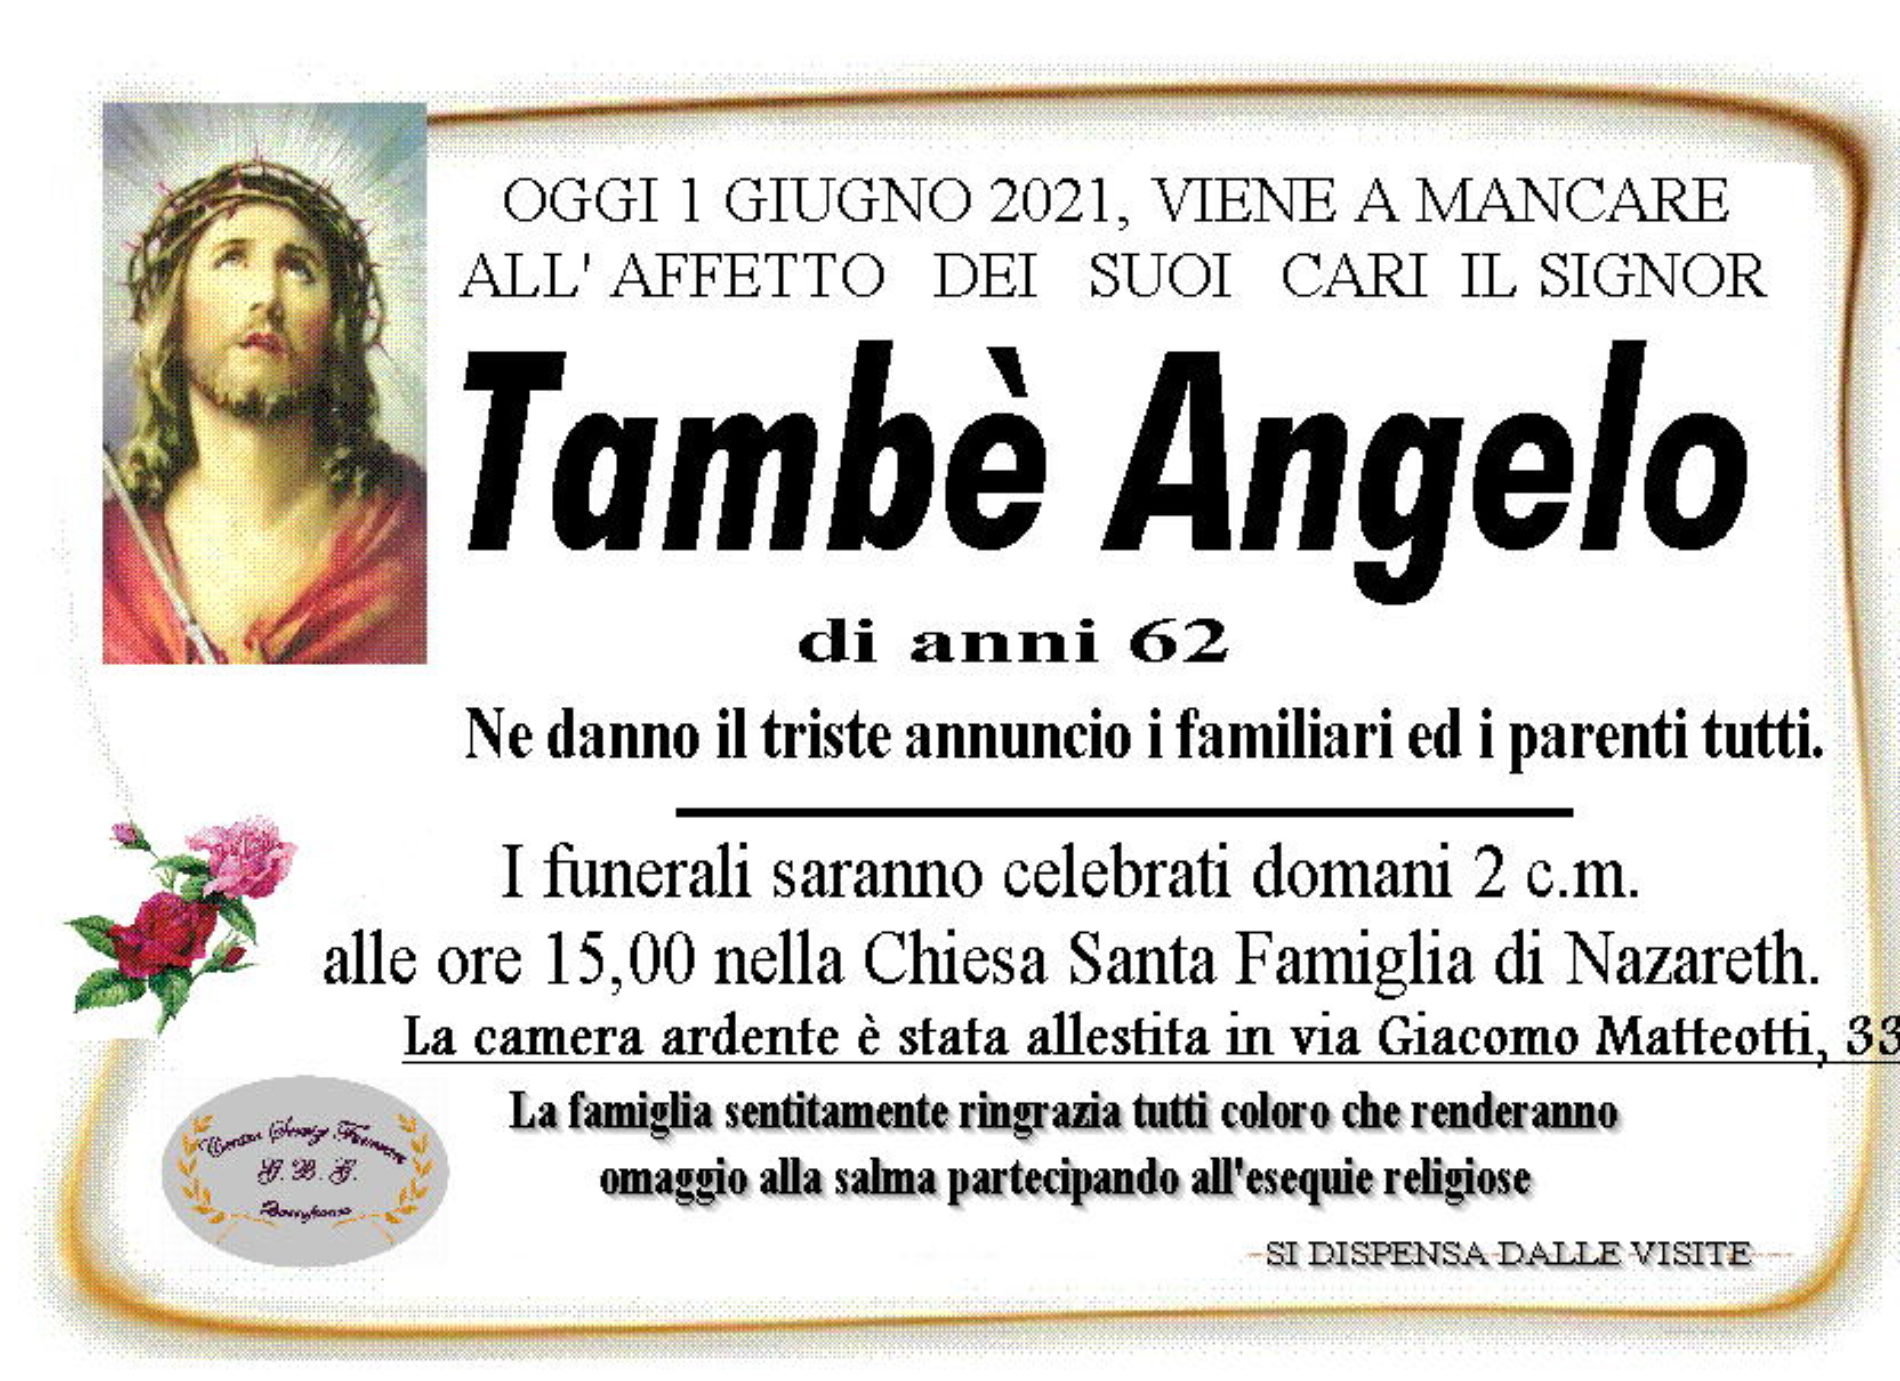 Annuncio servizi funerari agenzia G.B.G. sig. Tambè Angelo di anni 62